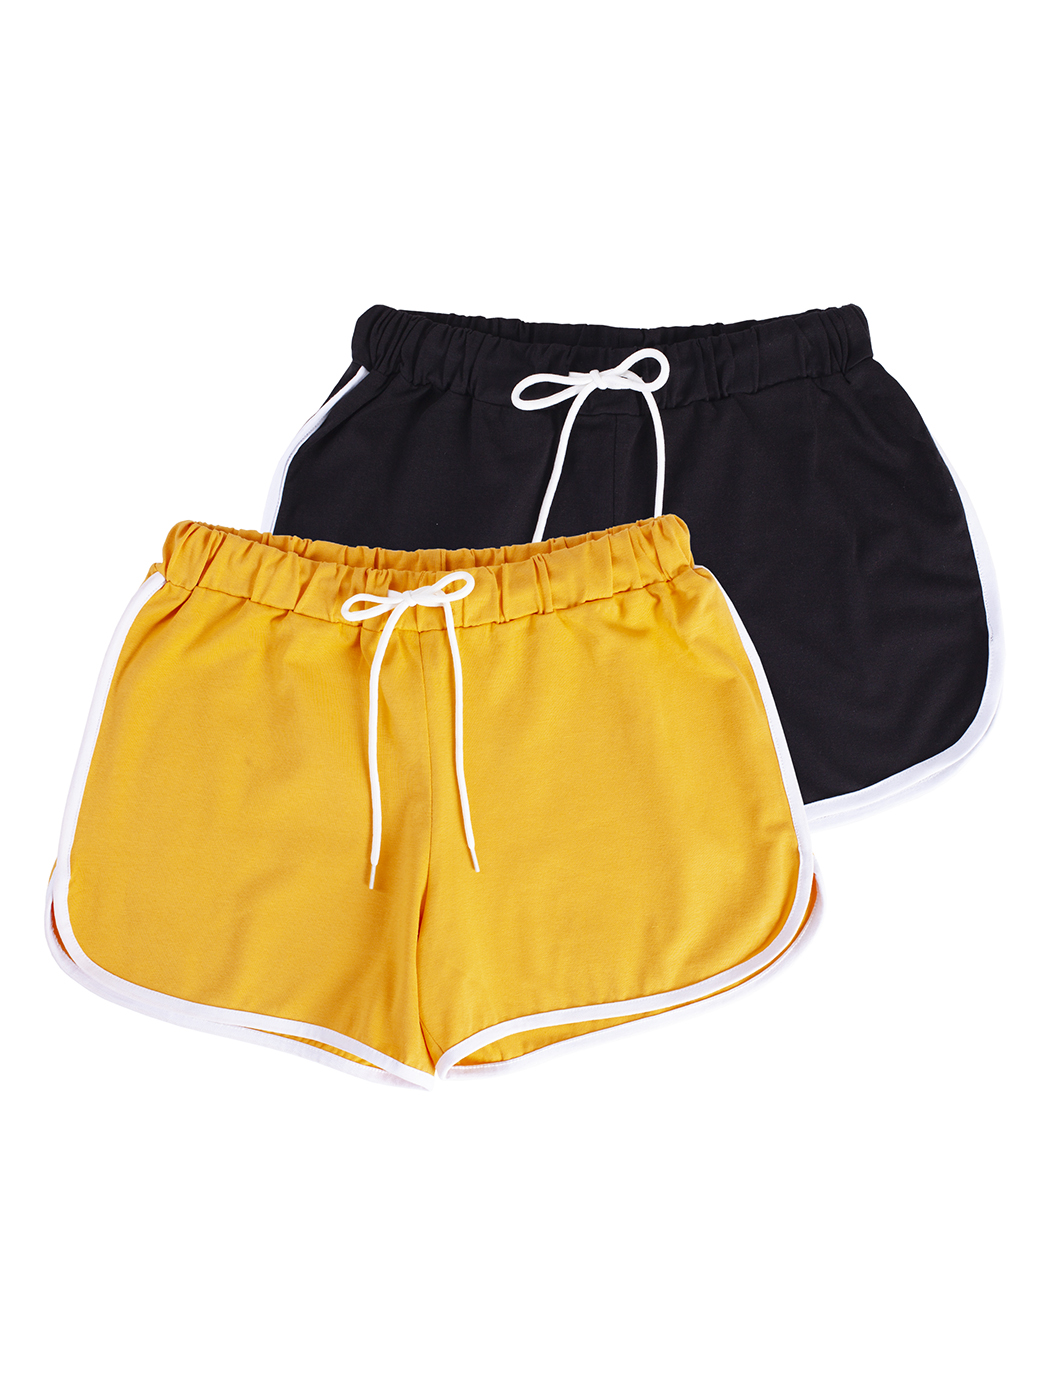 Cпортивные шорты женские Lunarable ksrt002-2_ желтые M